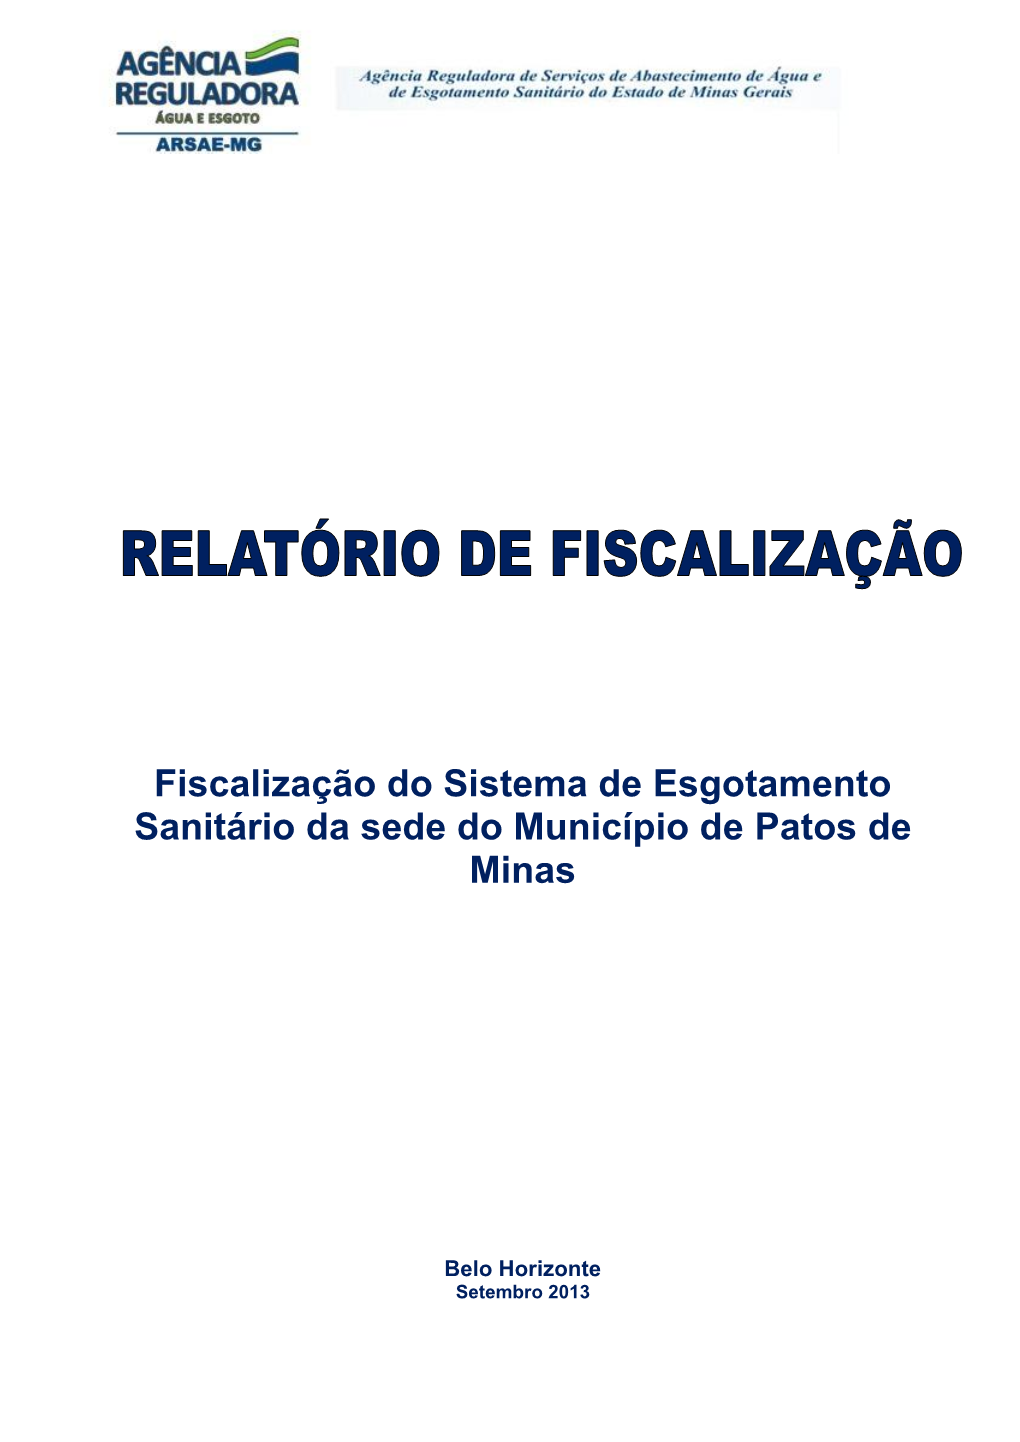 Fiscalização Do Sistema De Esgotamento Sanitário Da Sede Do Município De Patos De Minas